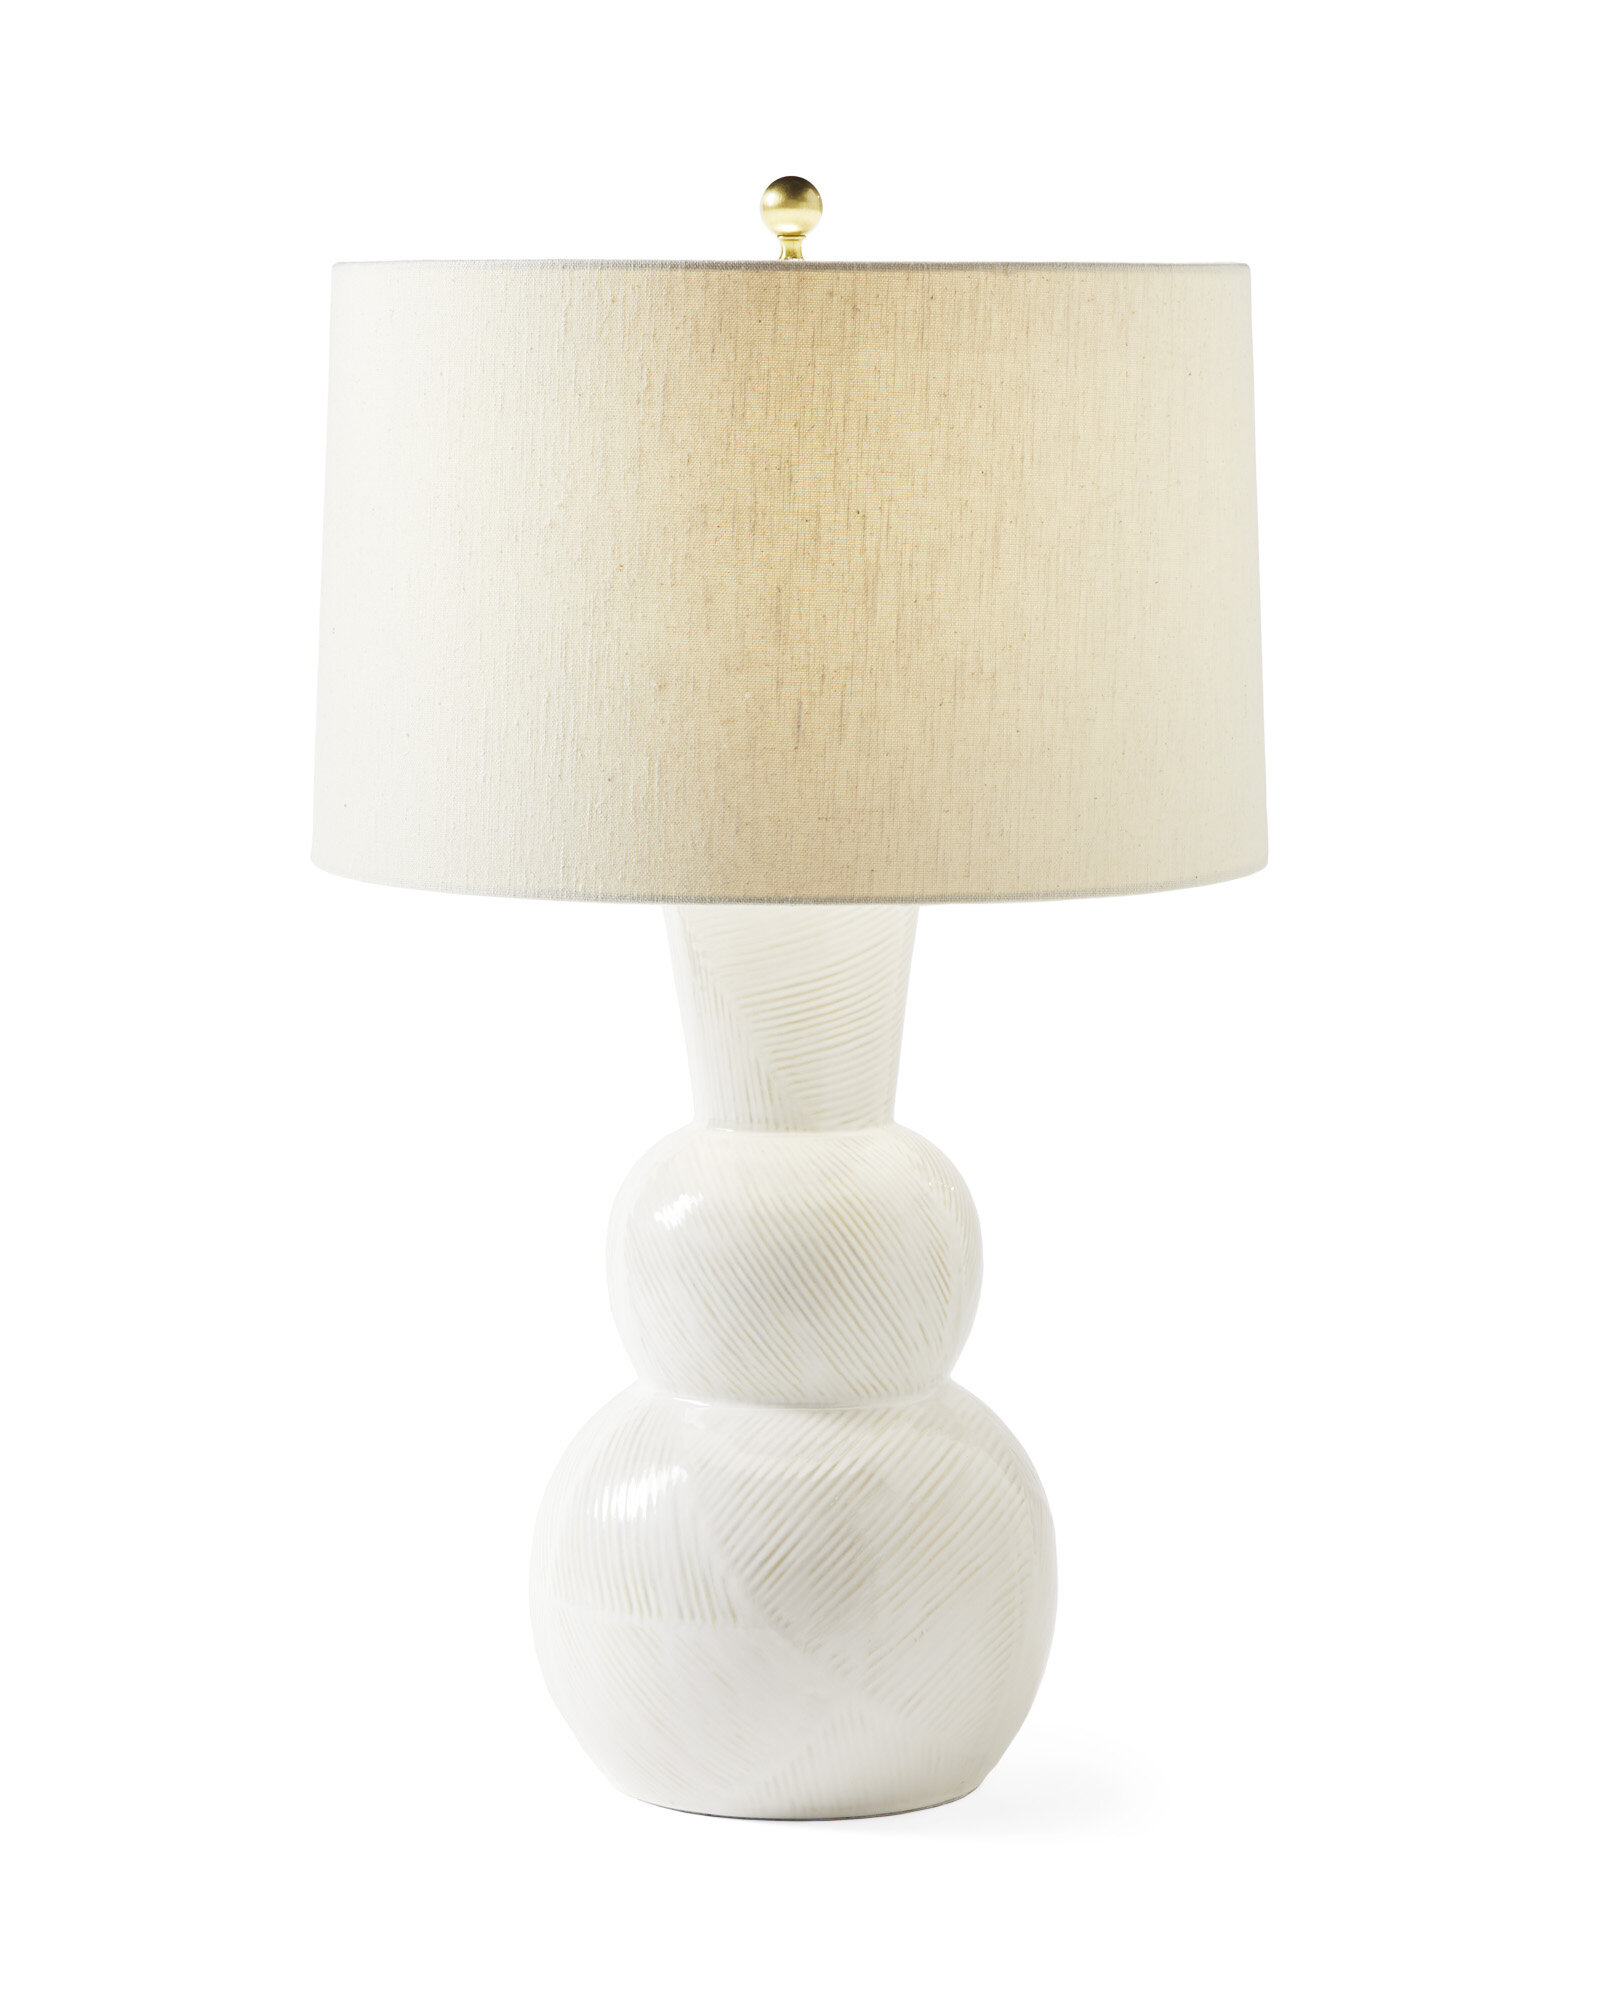 Gallaway Ceramic Table Lamp